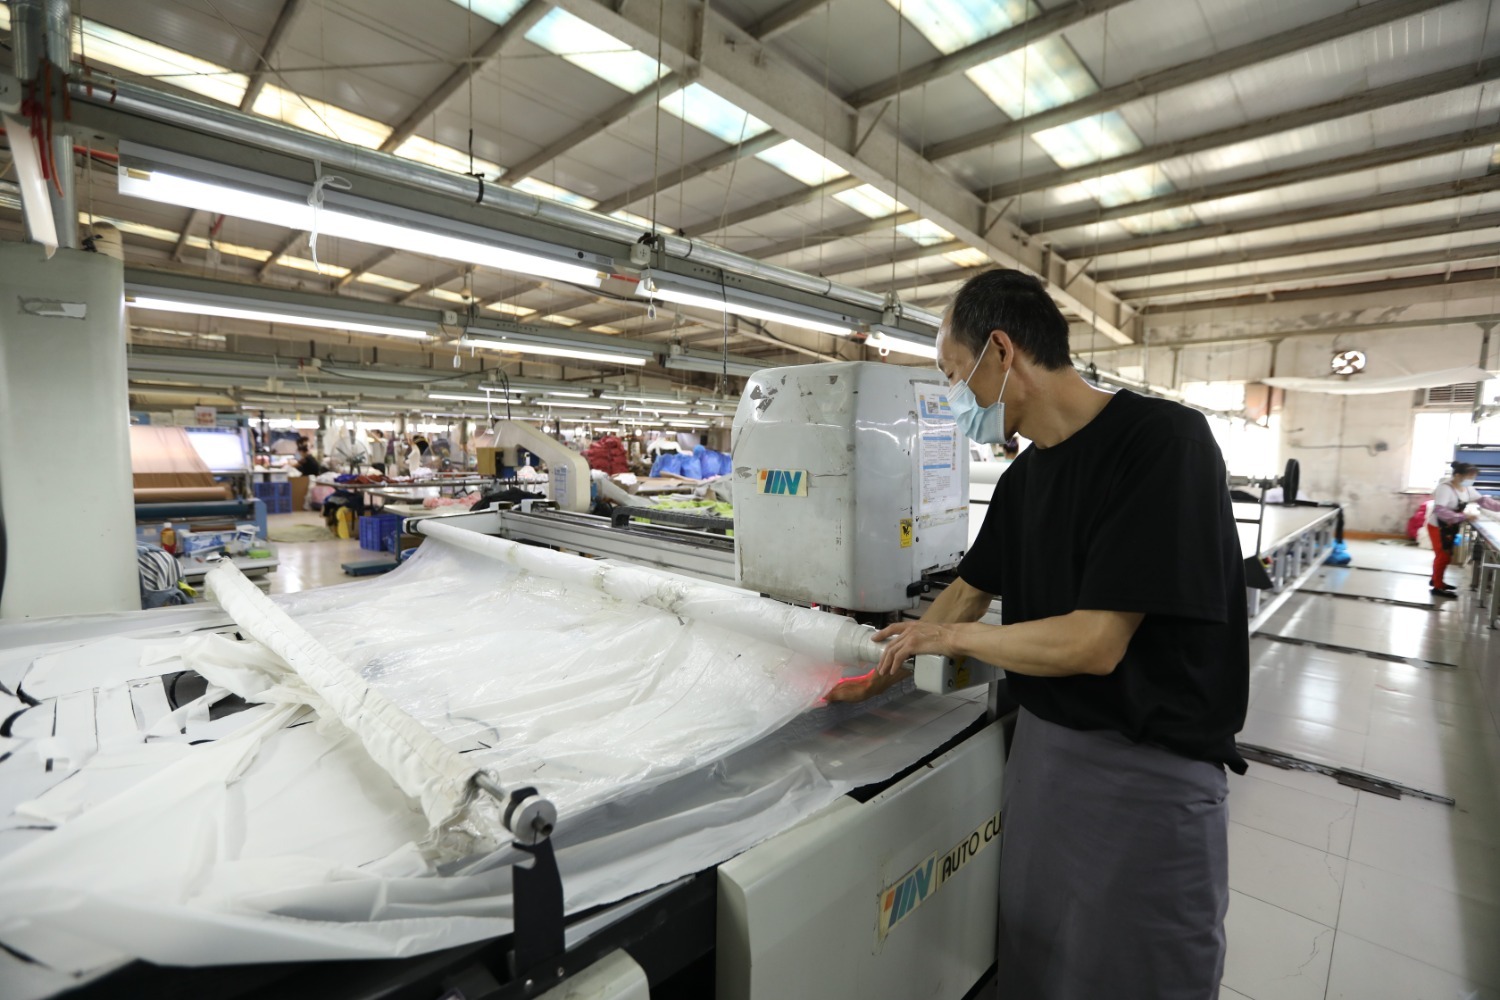 摄)图为在河北省香河县瑞康衣业有限公司车间,工人使用自动裁床对布料